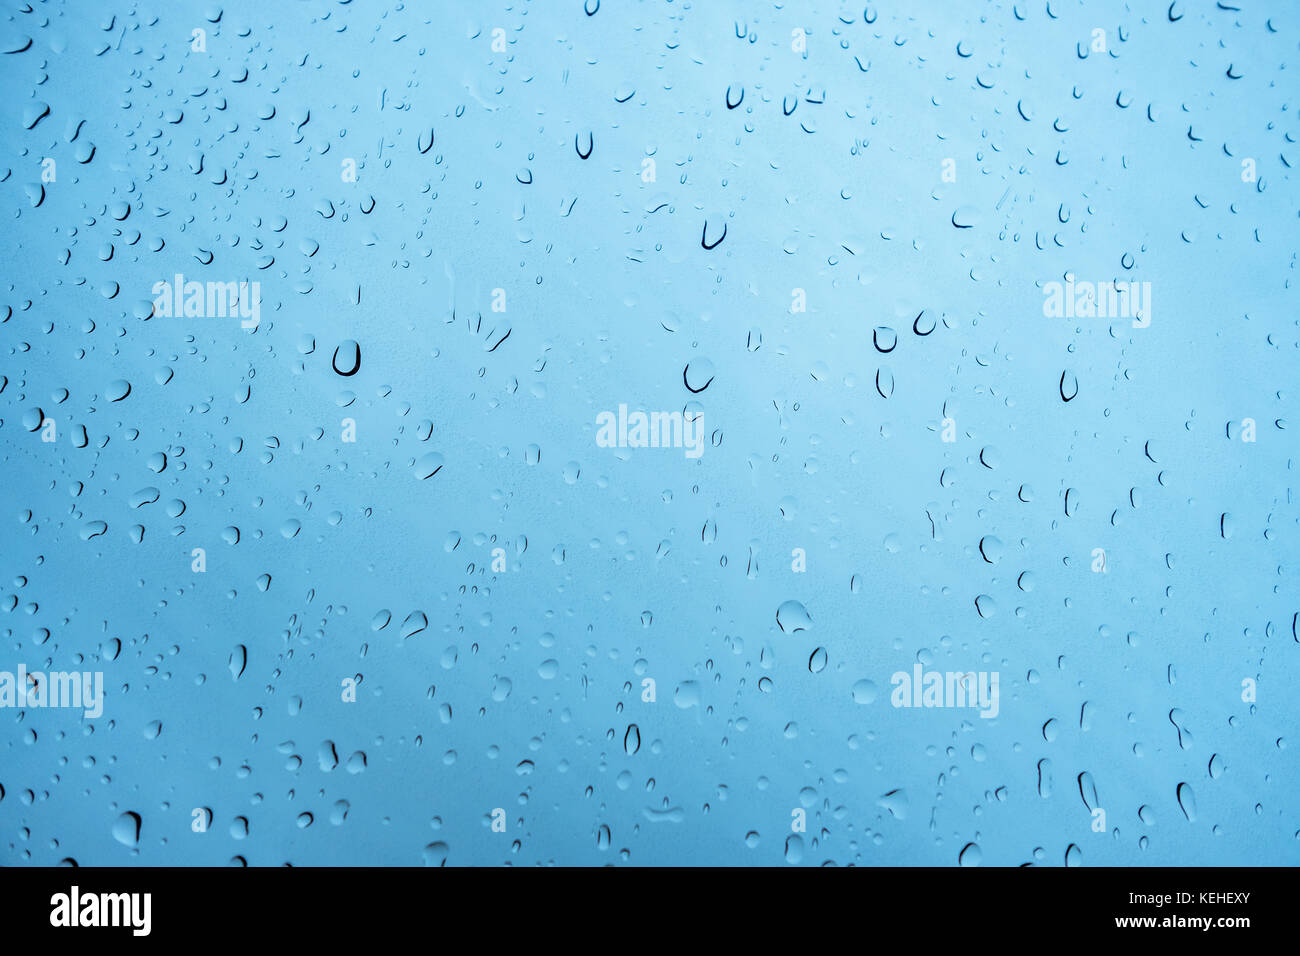 Gran cabezal de ducha tipo lluvia que libera gotas de agua.